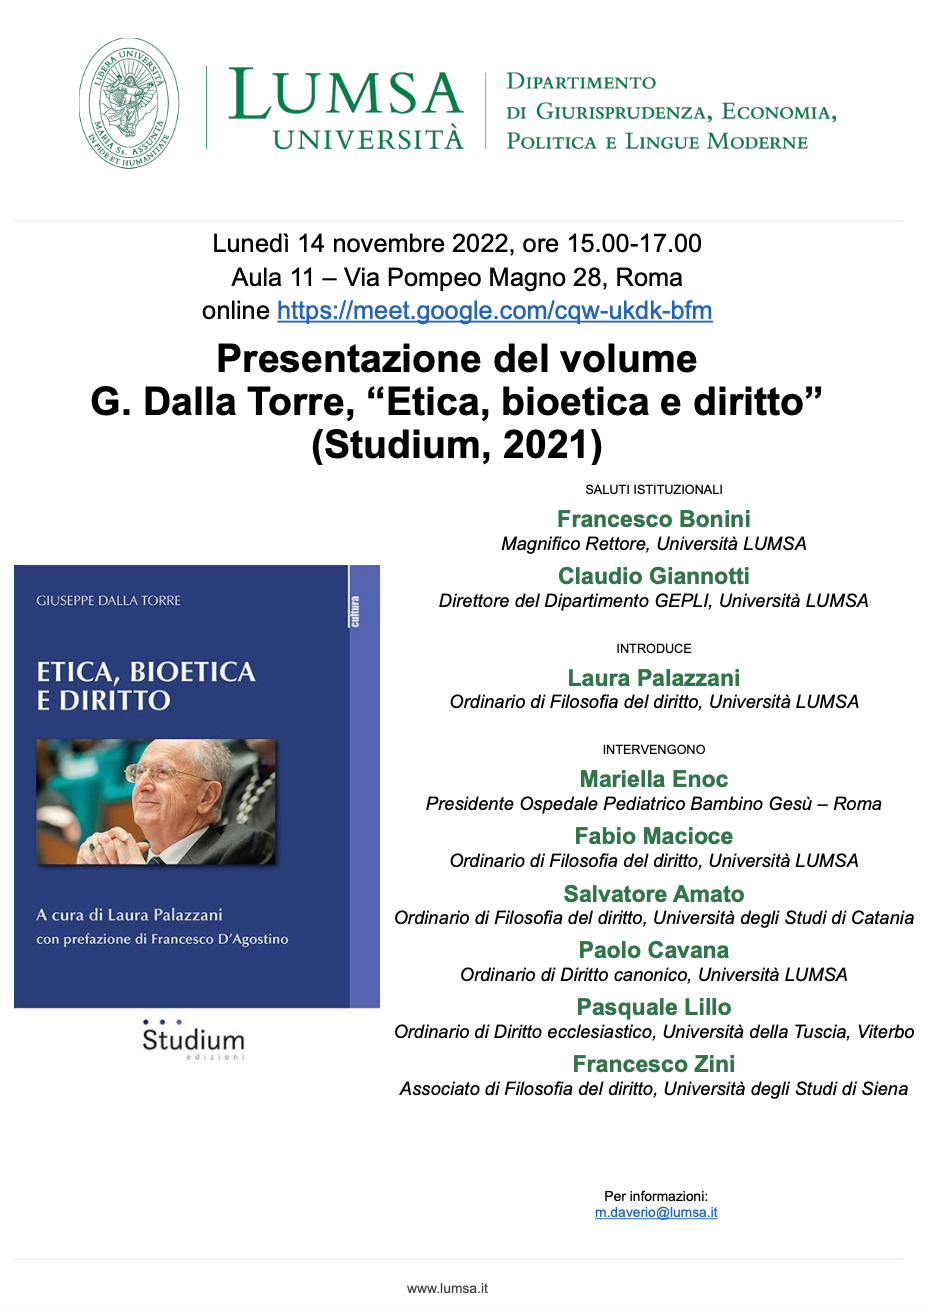 14 novembre 2022 – Presentazione del volume “Etica, bioetica e diritto”